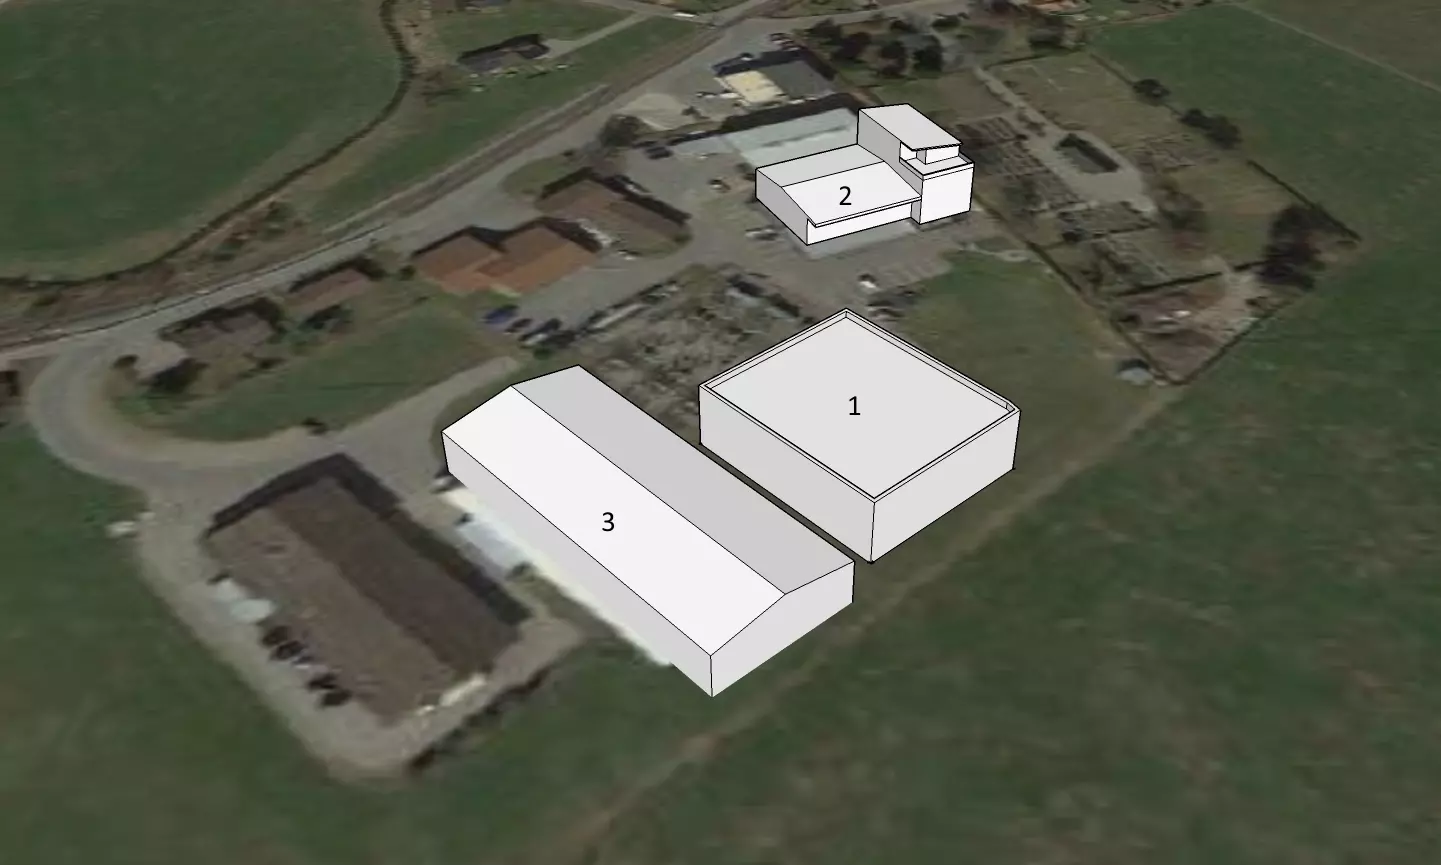 Abbildung 1: Simulation der Blendwirkung anhand der 3D-Darstellung des Rechenzentrum (1) und Käserei (3), die durch Solaranlagen das Wohngebäude (2) blenden können.